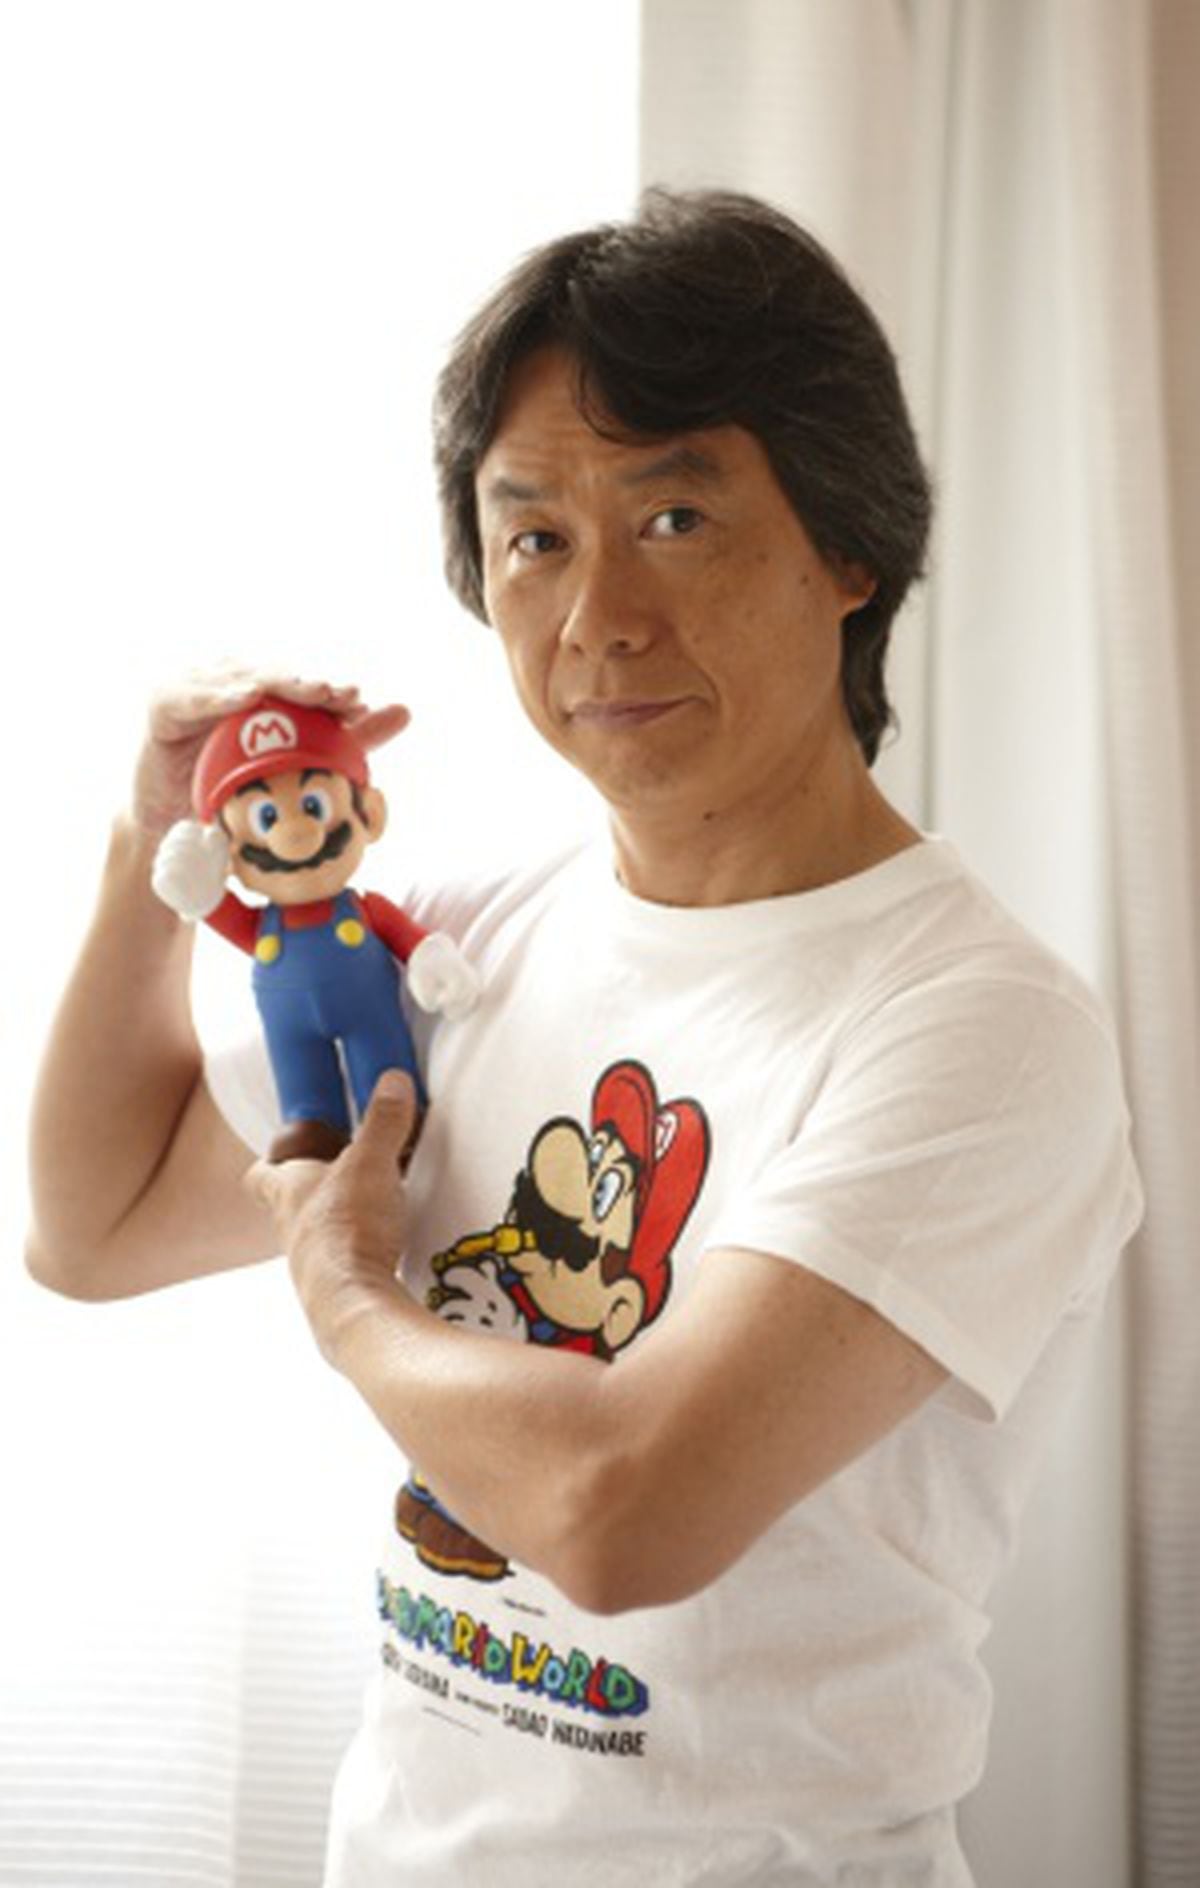 Criador do Super Mario: “Não criei obras para serem consideradas arte”, Cultura